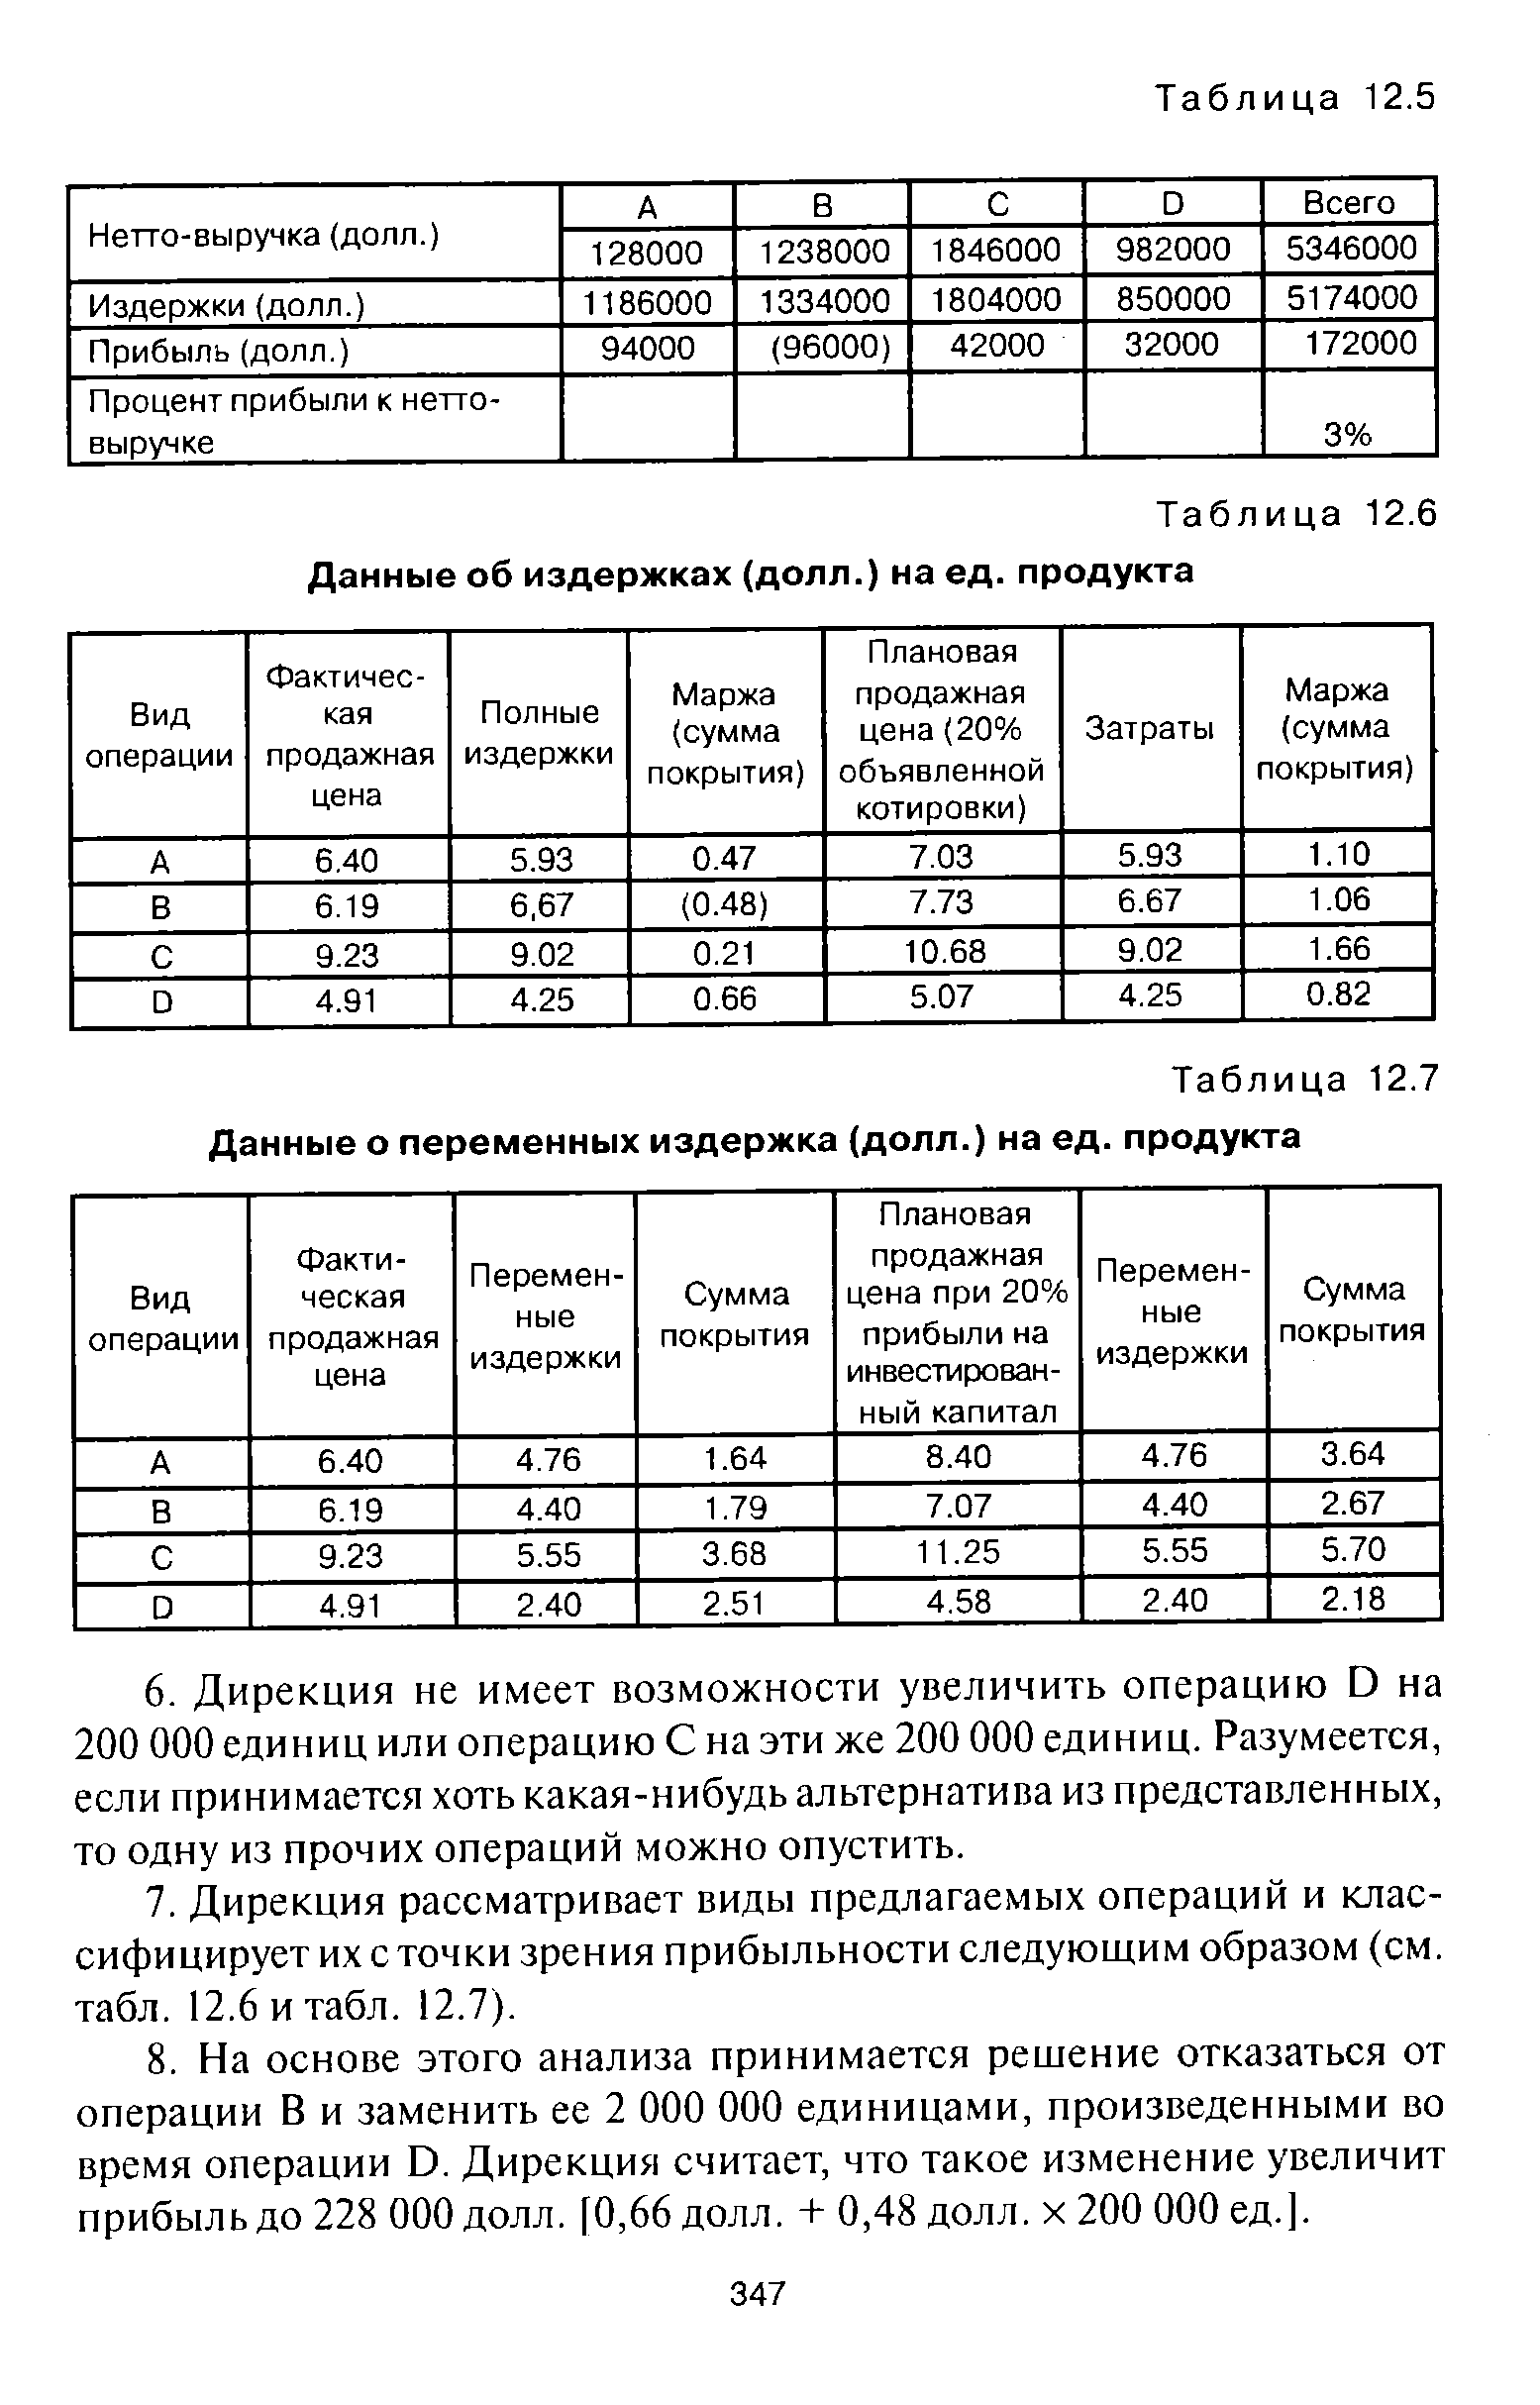 Таблица 12.6 Данные об издержках (долл.) на ед. продукта
